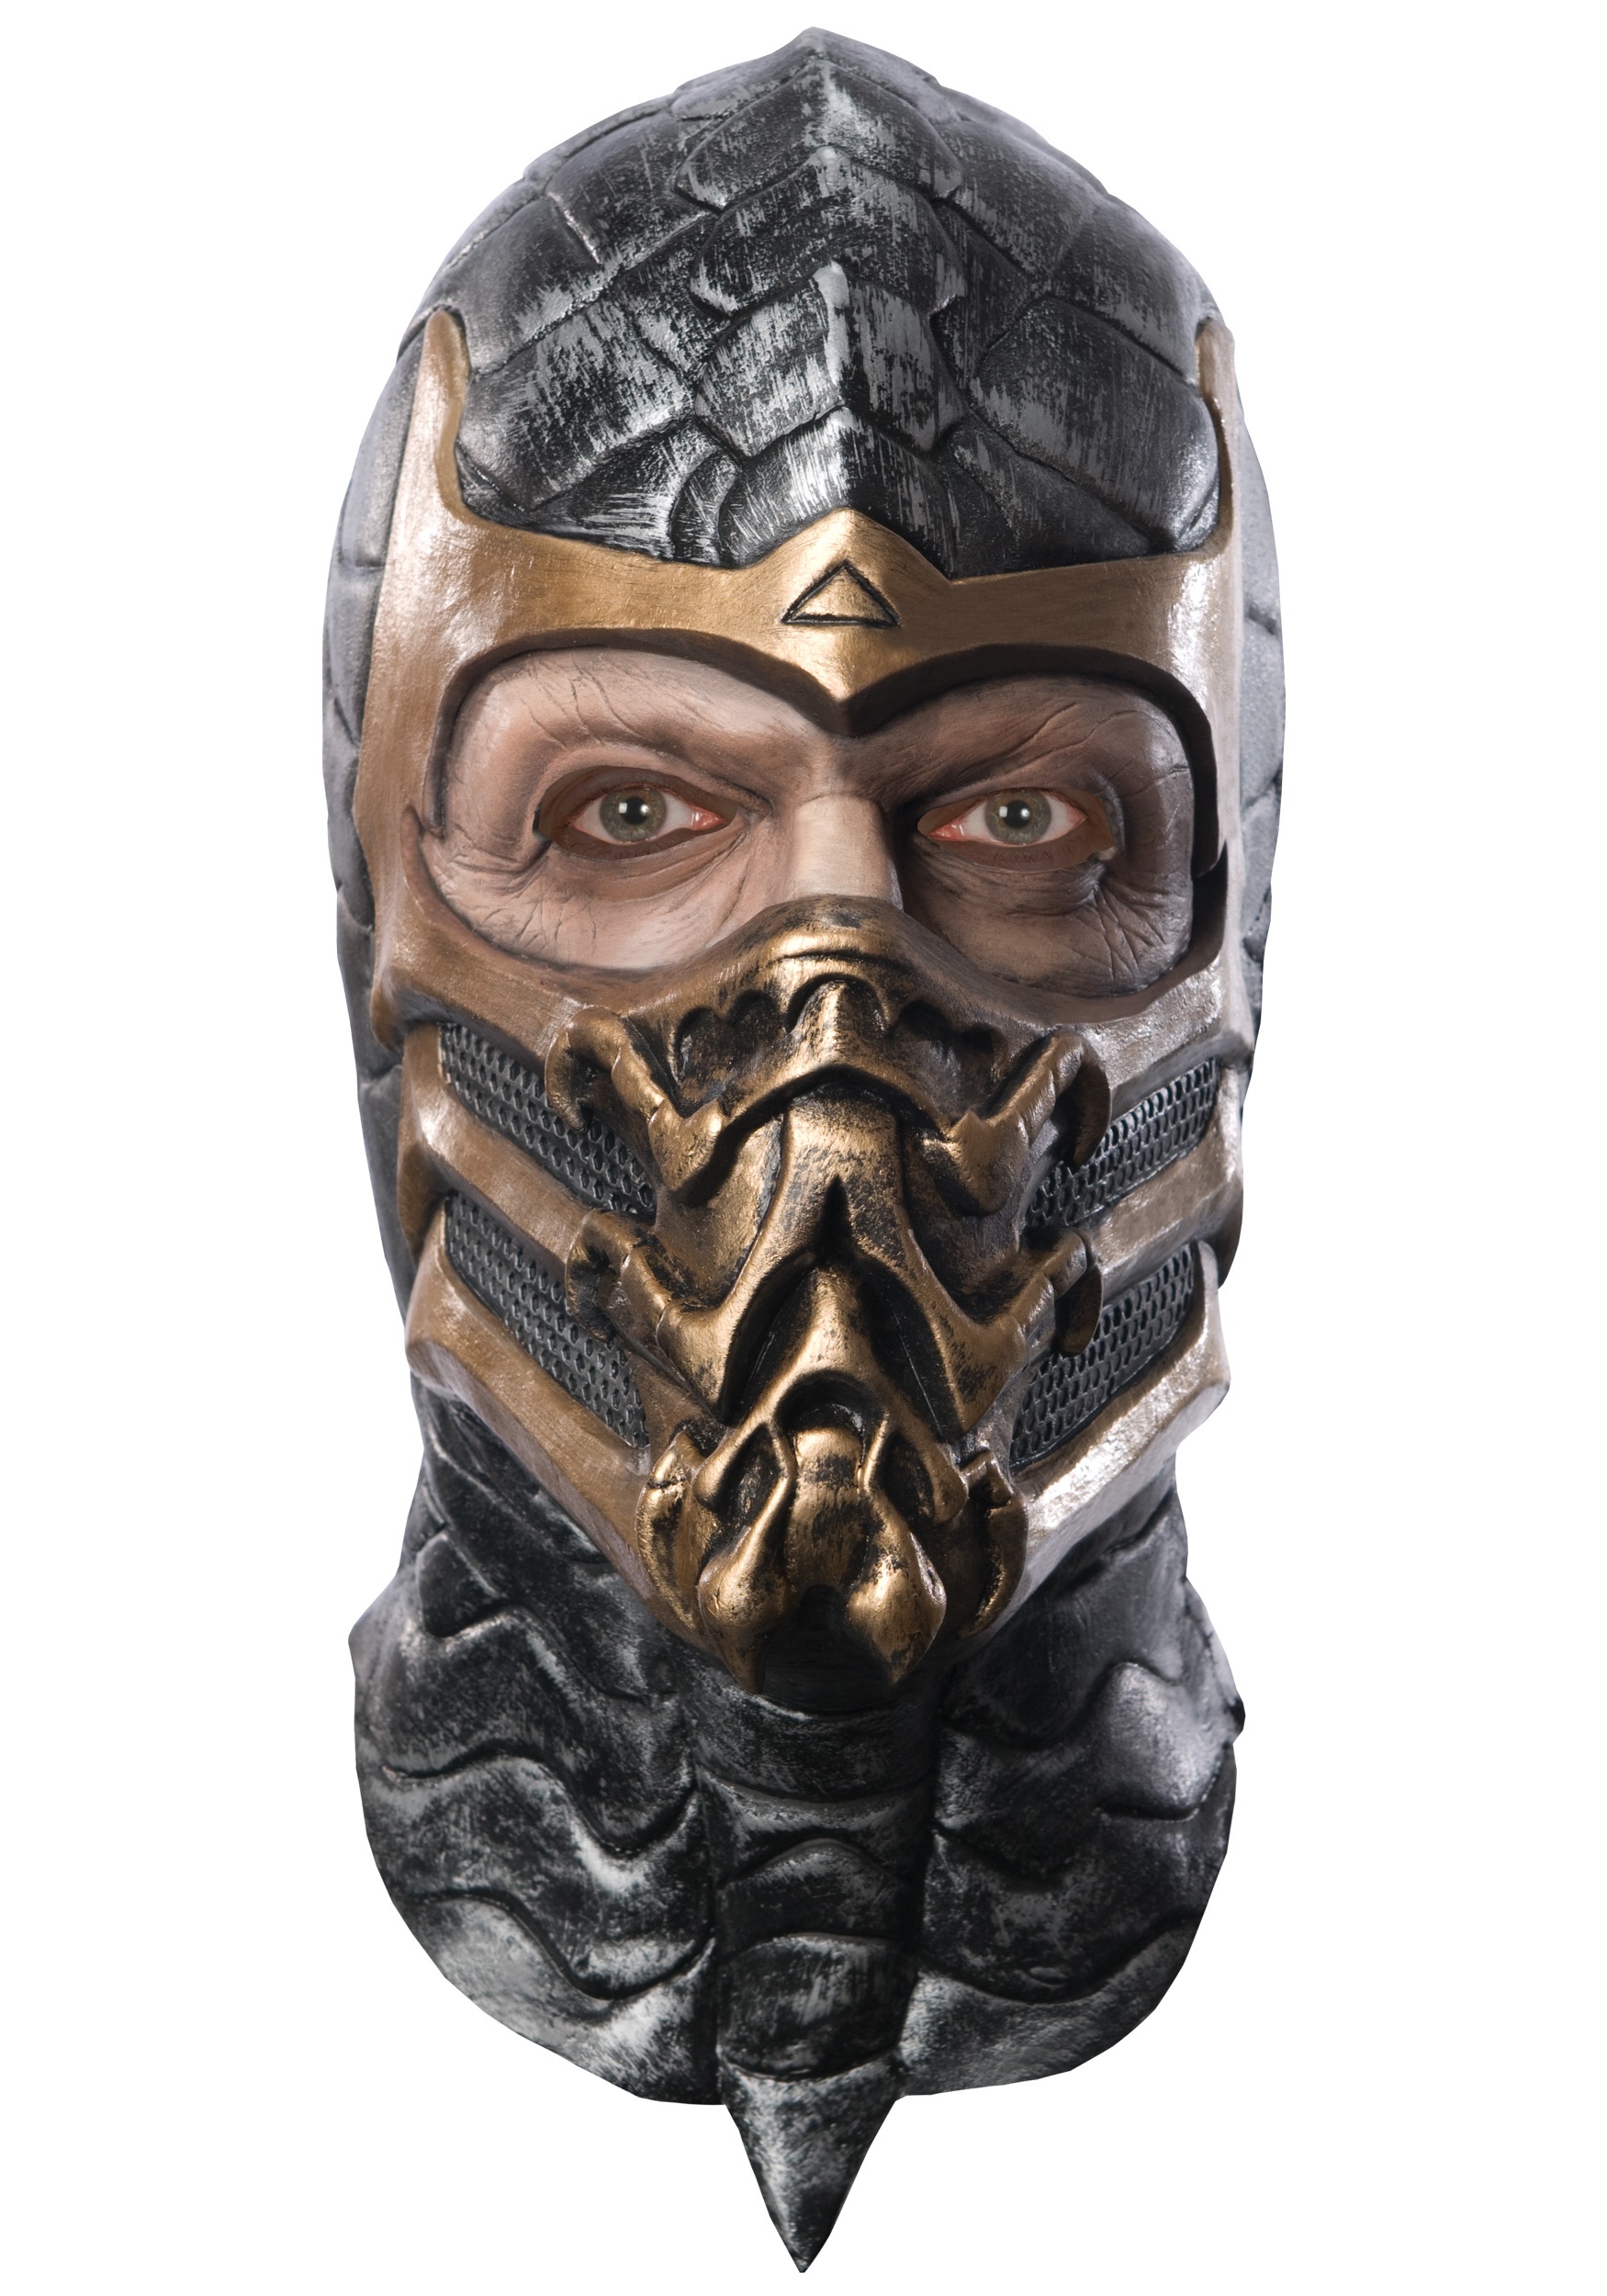 Скорпион маска выпуски. Скорпион мортал комбат маска. Маска Mortal Kombat. Mortal Kombat Scorpion Mask. Маска Скорпион Scorpion Mask (Mortal Kombat 11).